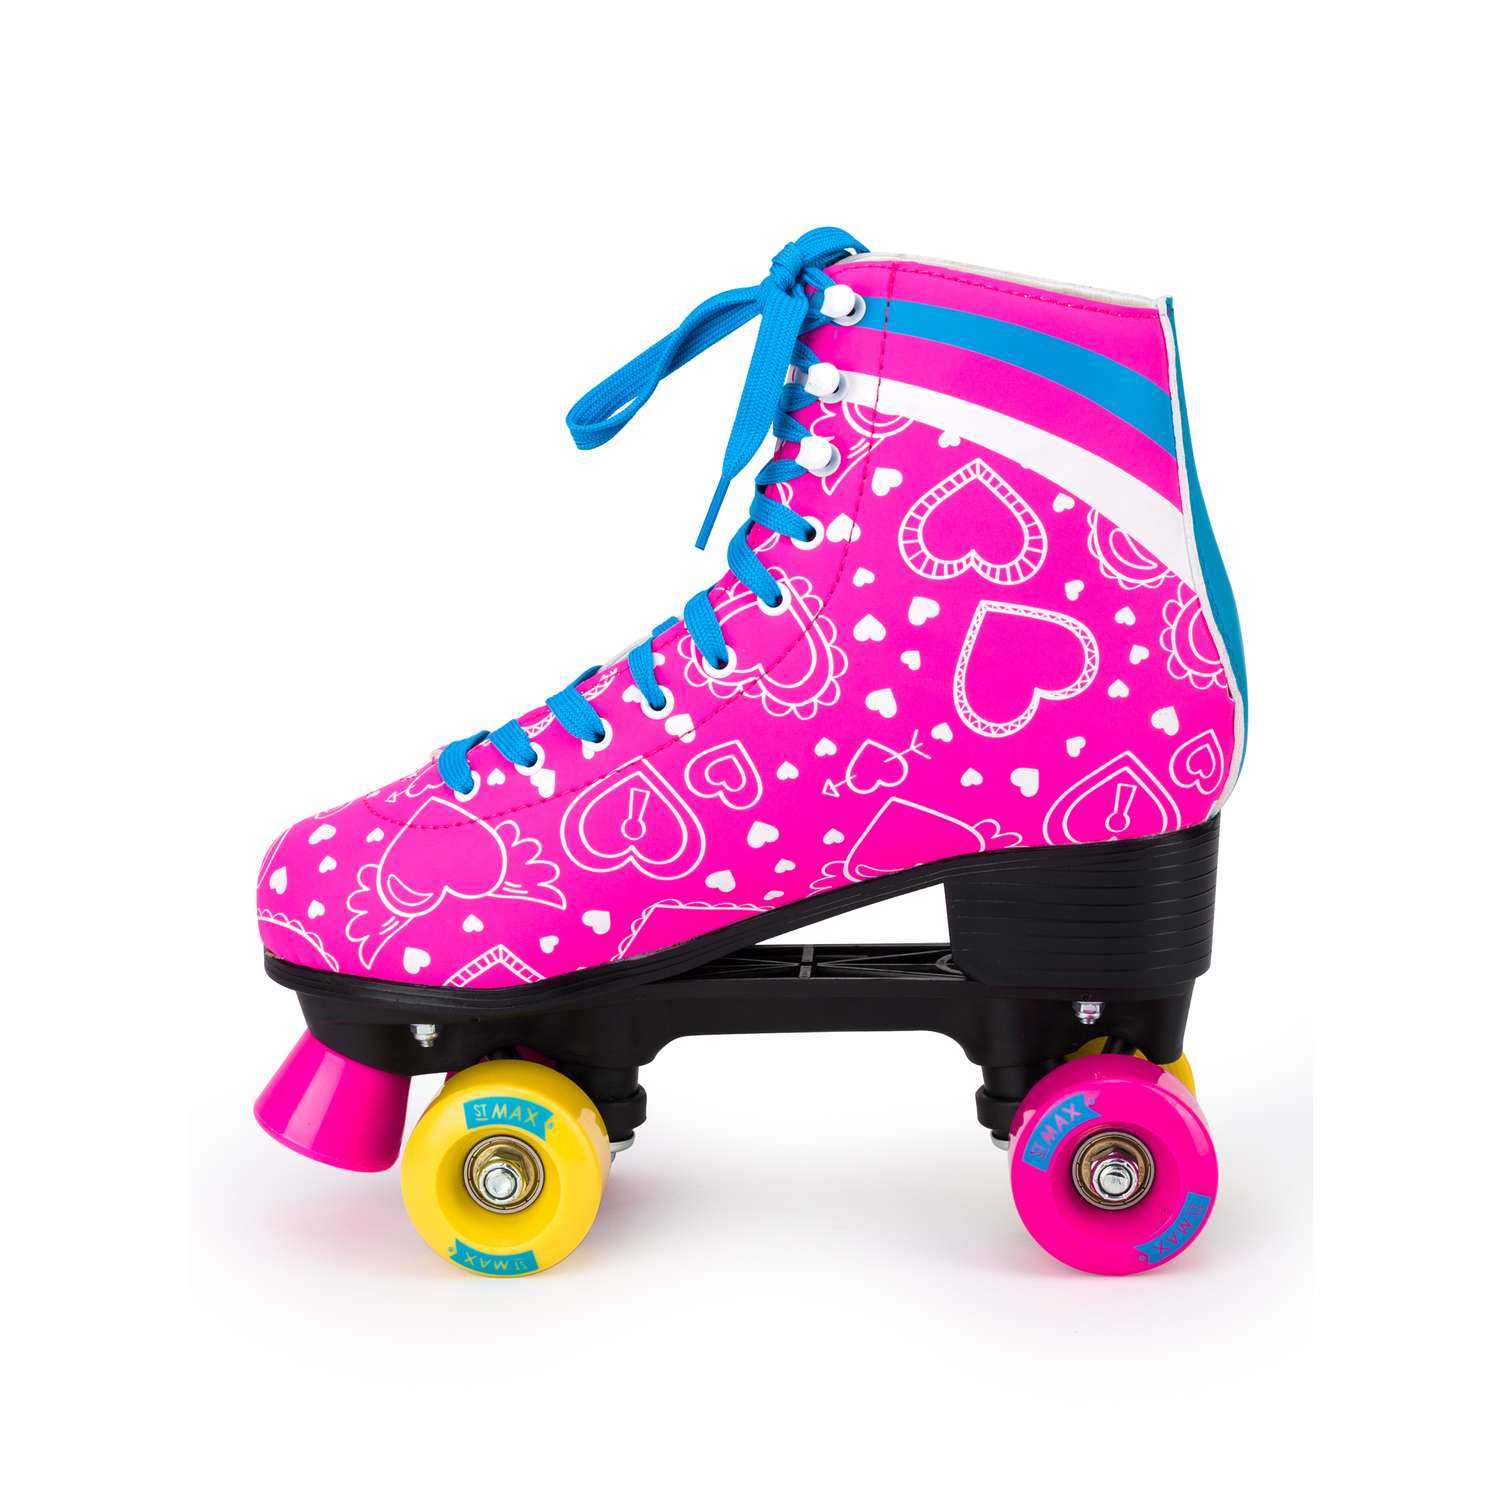 Роликовые коньки SXRide Roller skate YXSKT04BLPN36 цвет розовые с белыми сердечкам размер 36 - фото 3